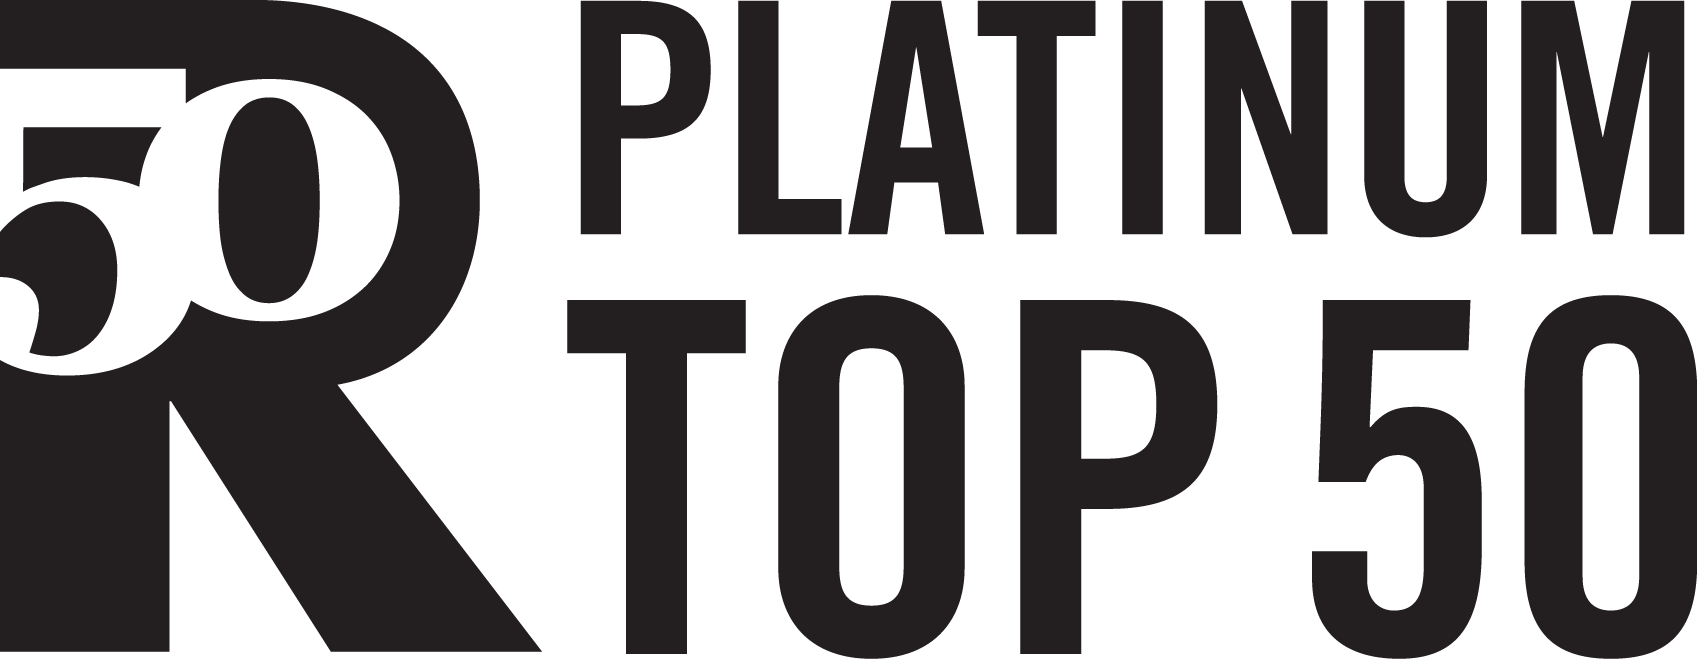 Platinum Top 50 Realtors (1697x659), Png Download